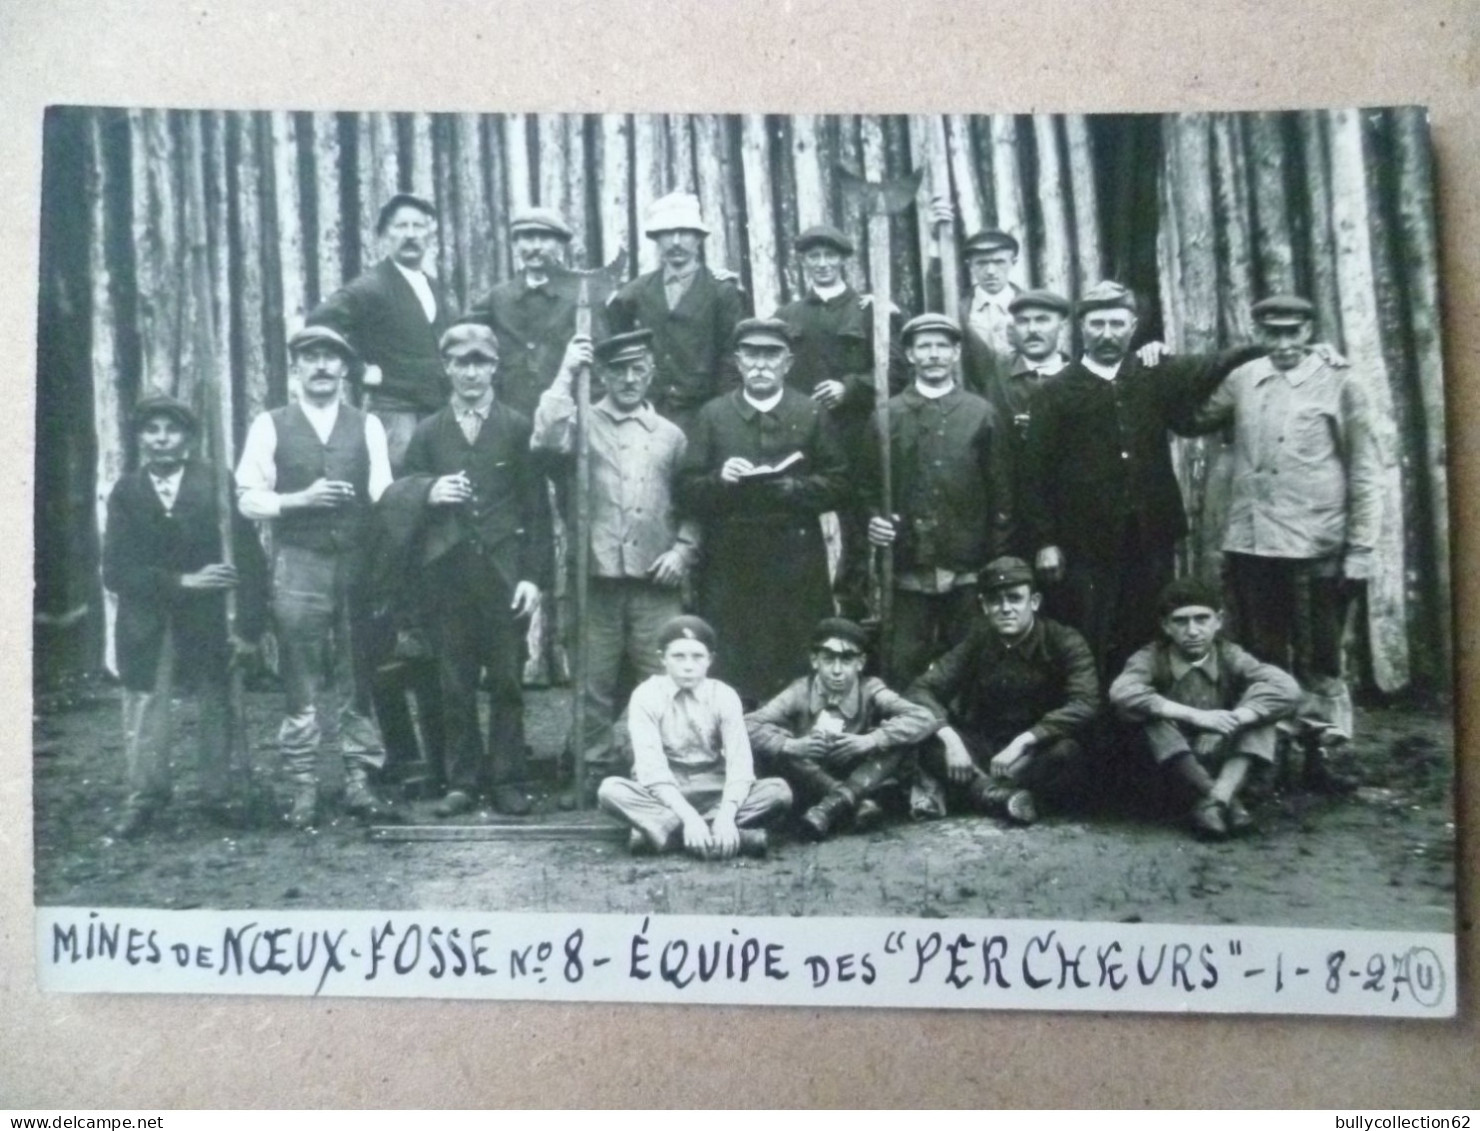 CPA - SELECTION - NOEUX LES MINES  - CARTE PHOTO -  Mines De Noeux . Fosse 8 - Equipe Des " PERCHEURS " 1927. - Noeux Les Mines